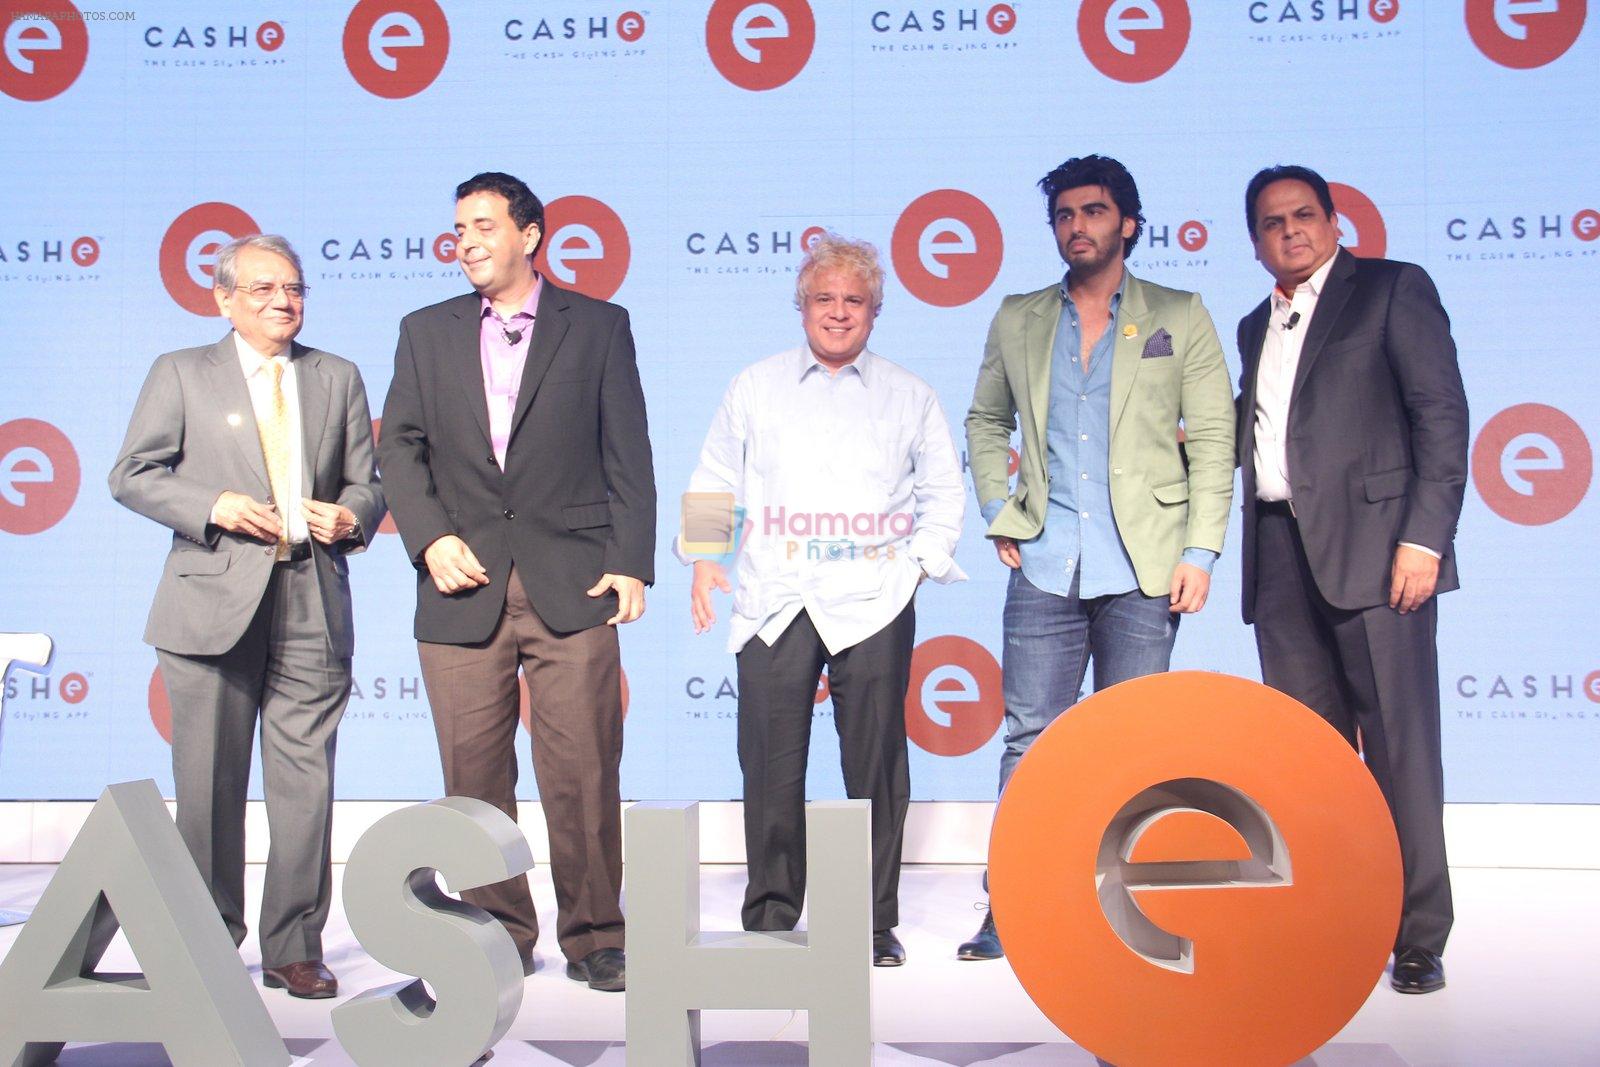 Arjun Kapoor at app launch in Mumbai on 31st March 2016